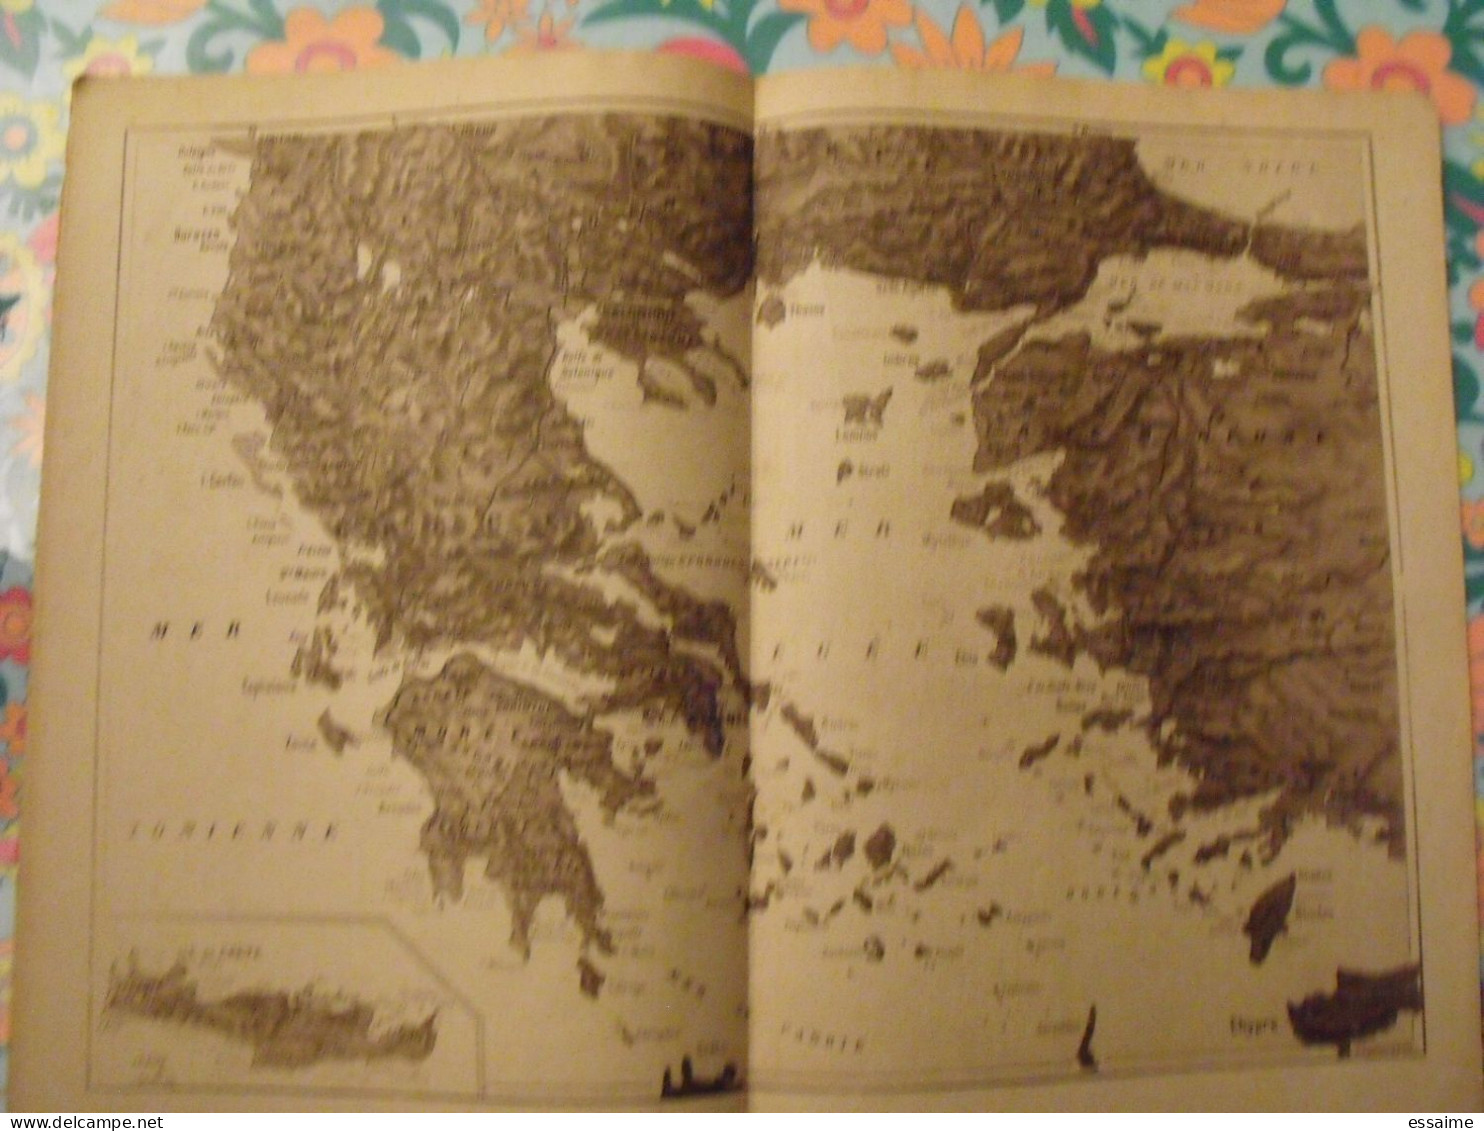 la Grèce par René Puaux. vers 1927. Venizélos histoire athènes macédoine épire